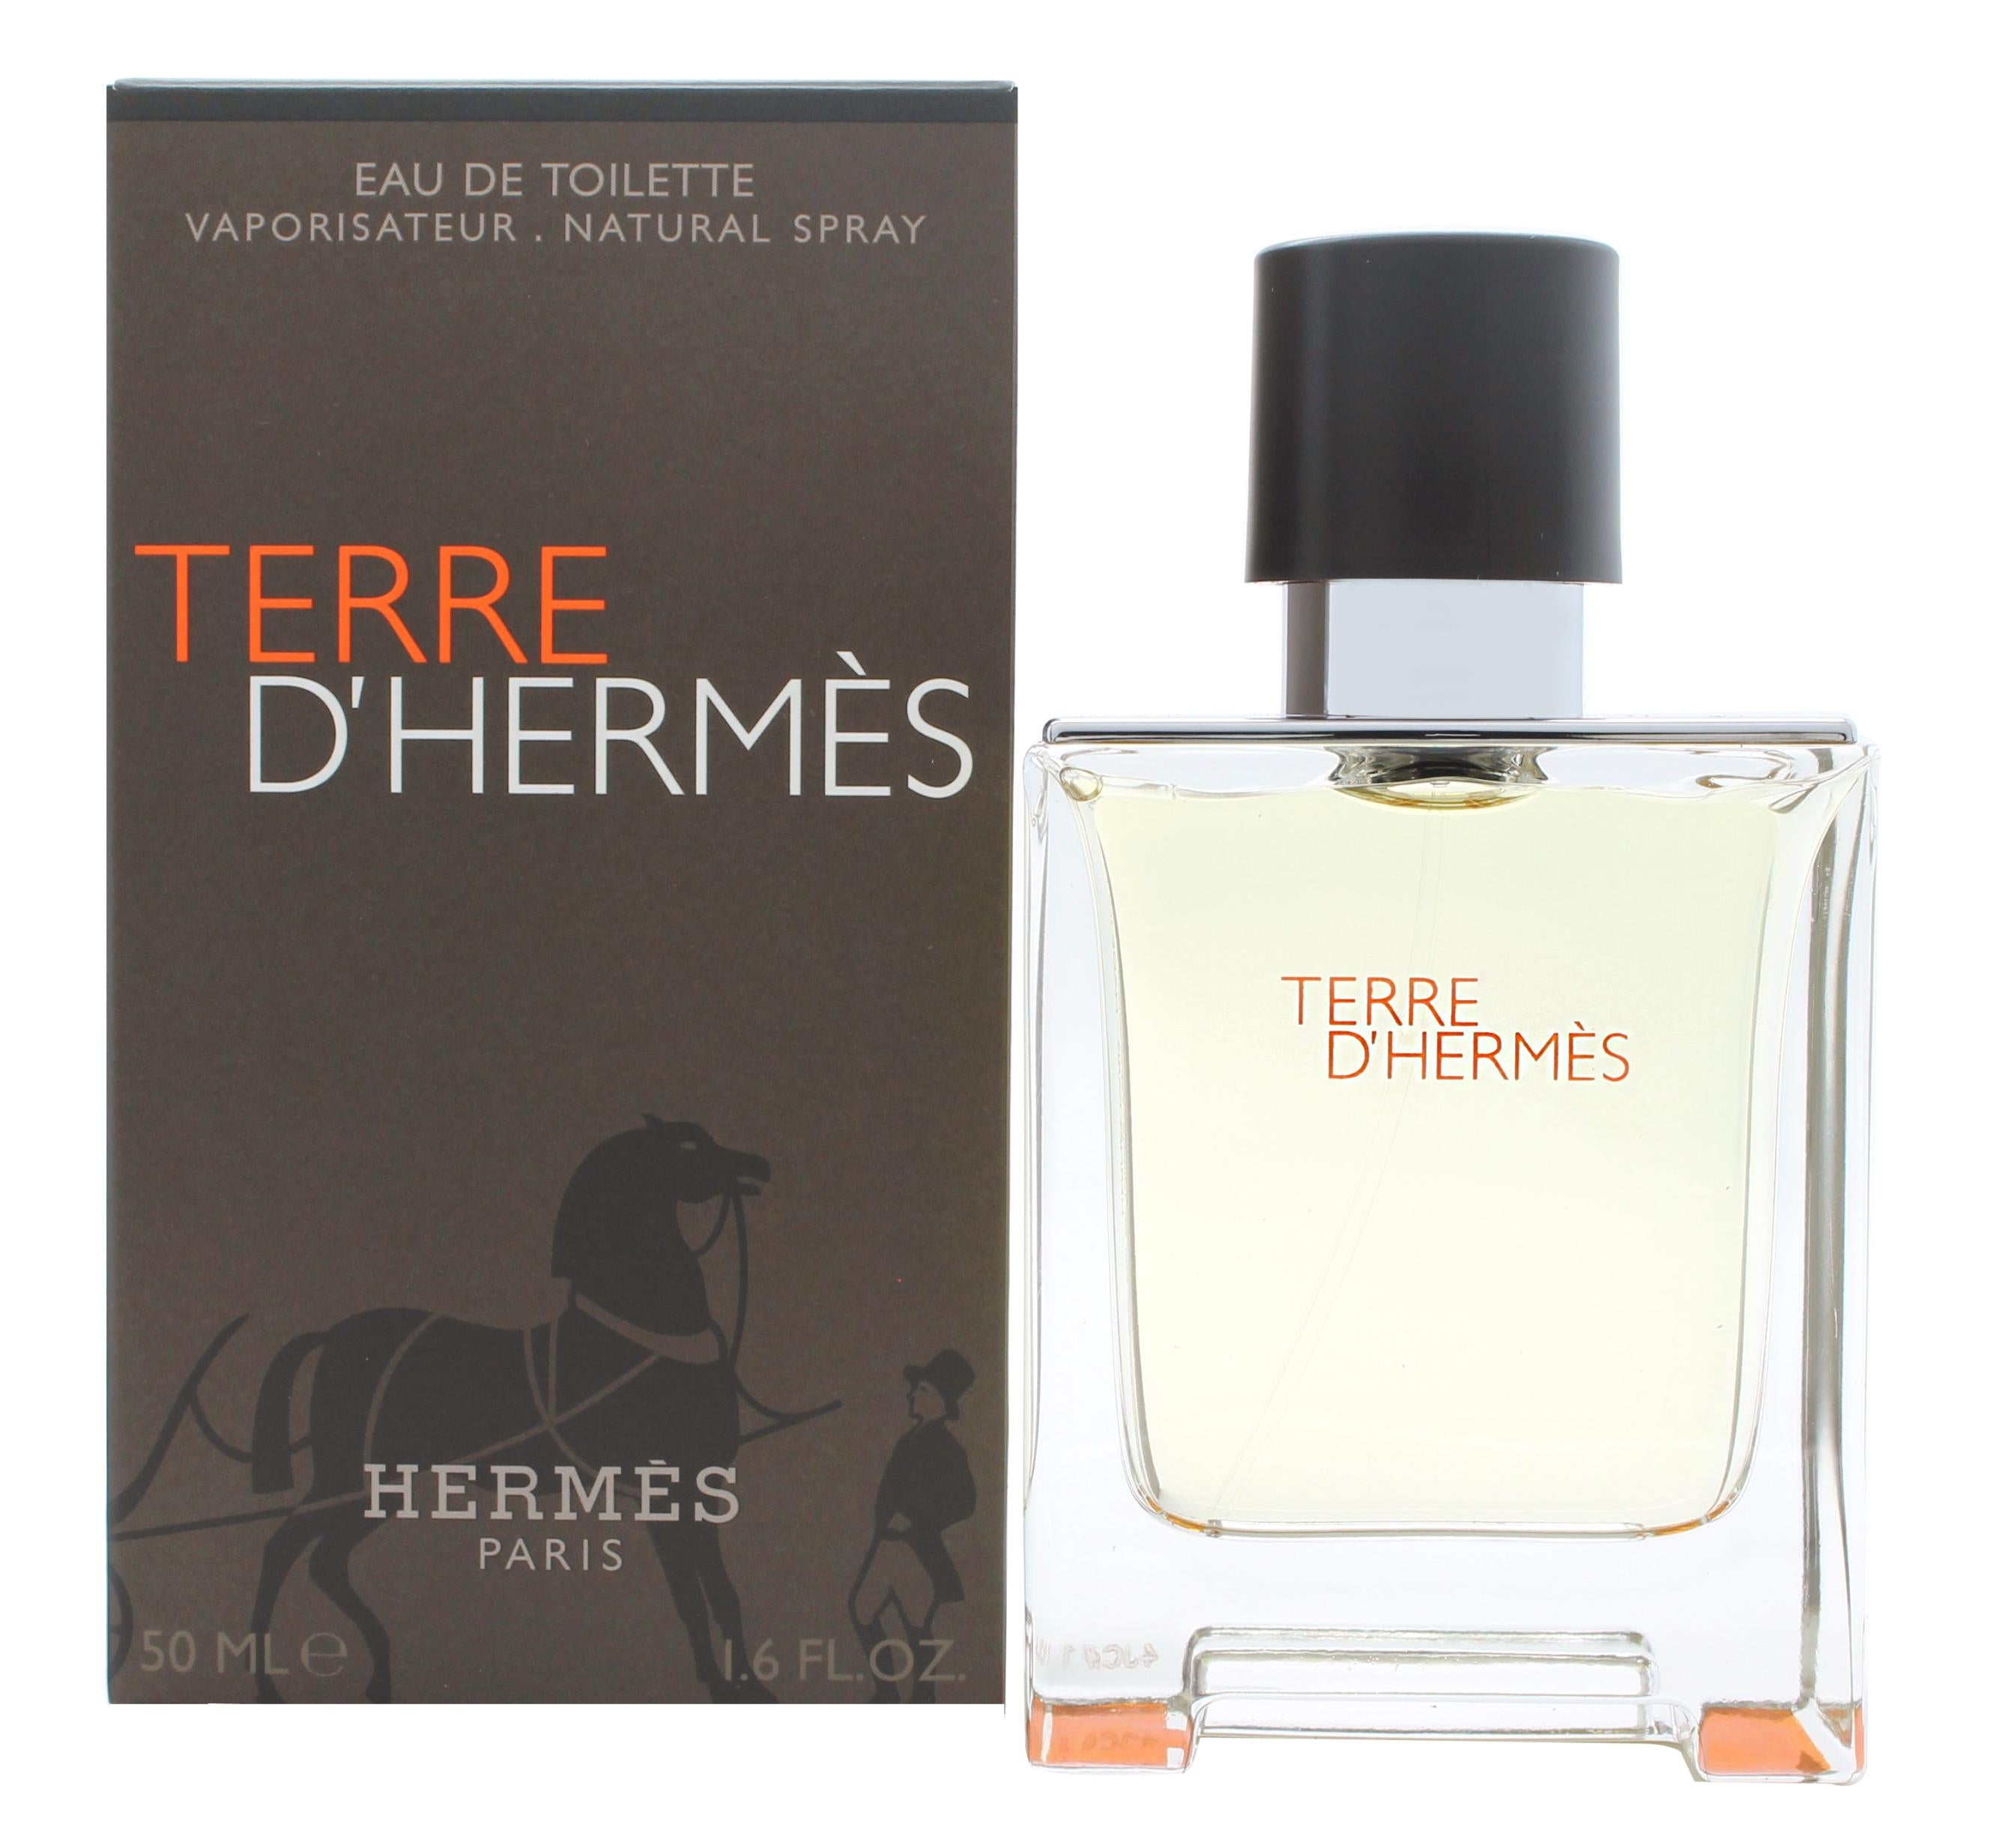 View Hermès Terre dHermès Eau de Toilette 50ml Spray information